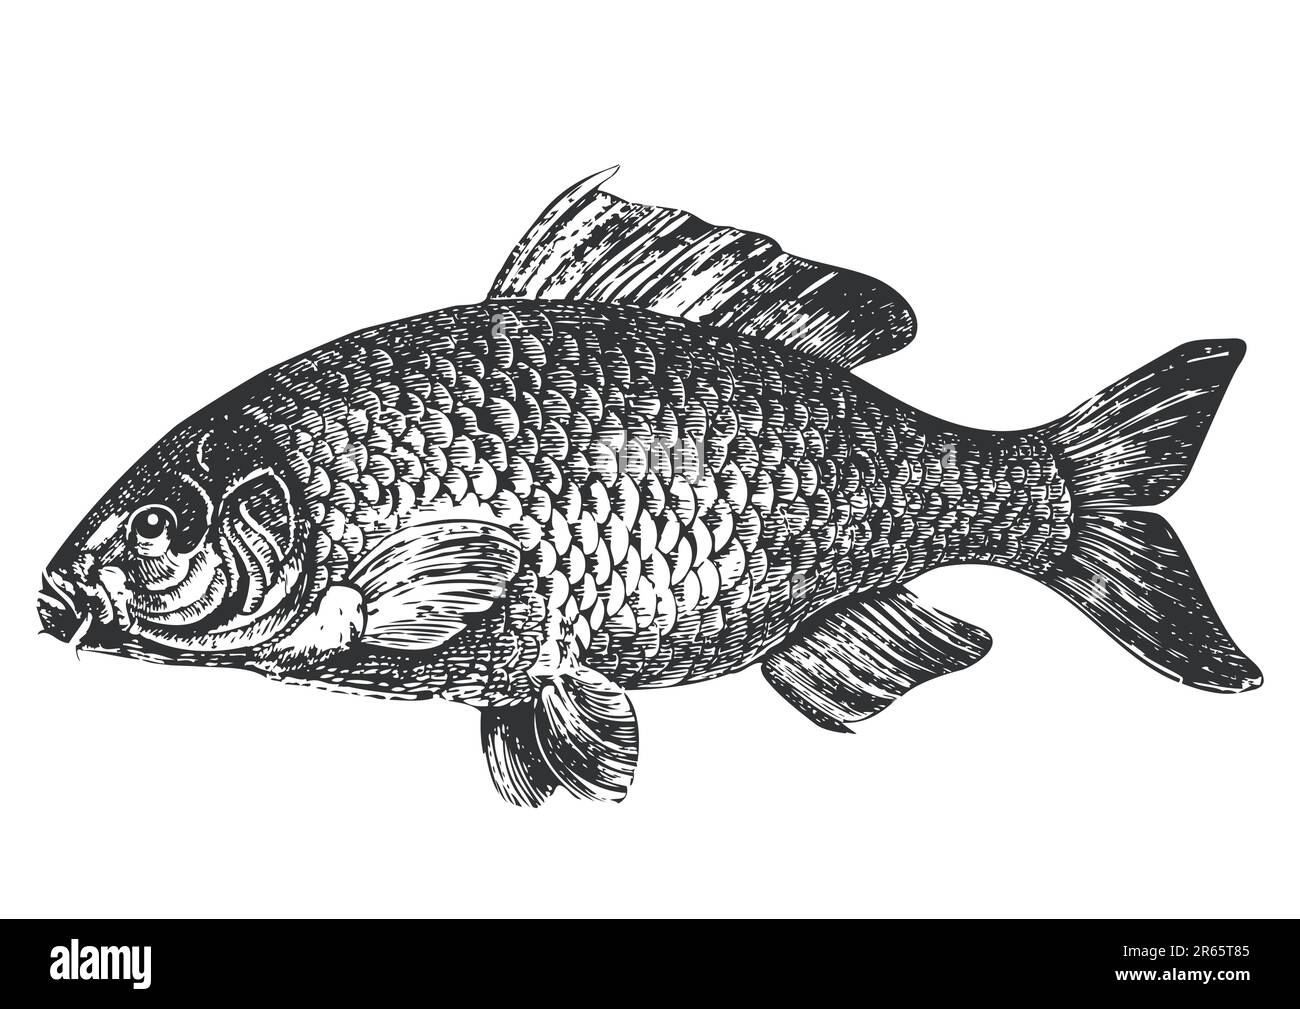 Illustration de carpe de poisson, antique graphik, isolé sur fond blanc, graphique vectoriel entièrement évolutif inclus EPS v8 et 300 dpi JPG. Illustration de Vecteur